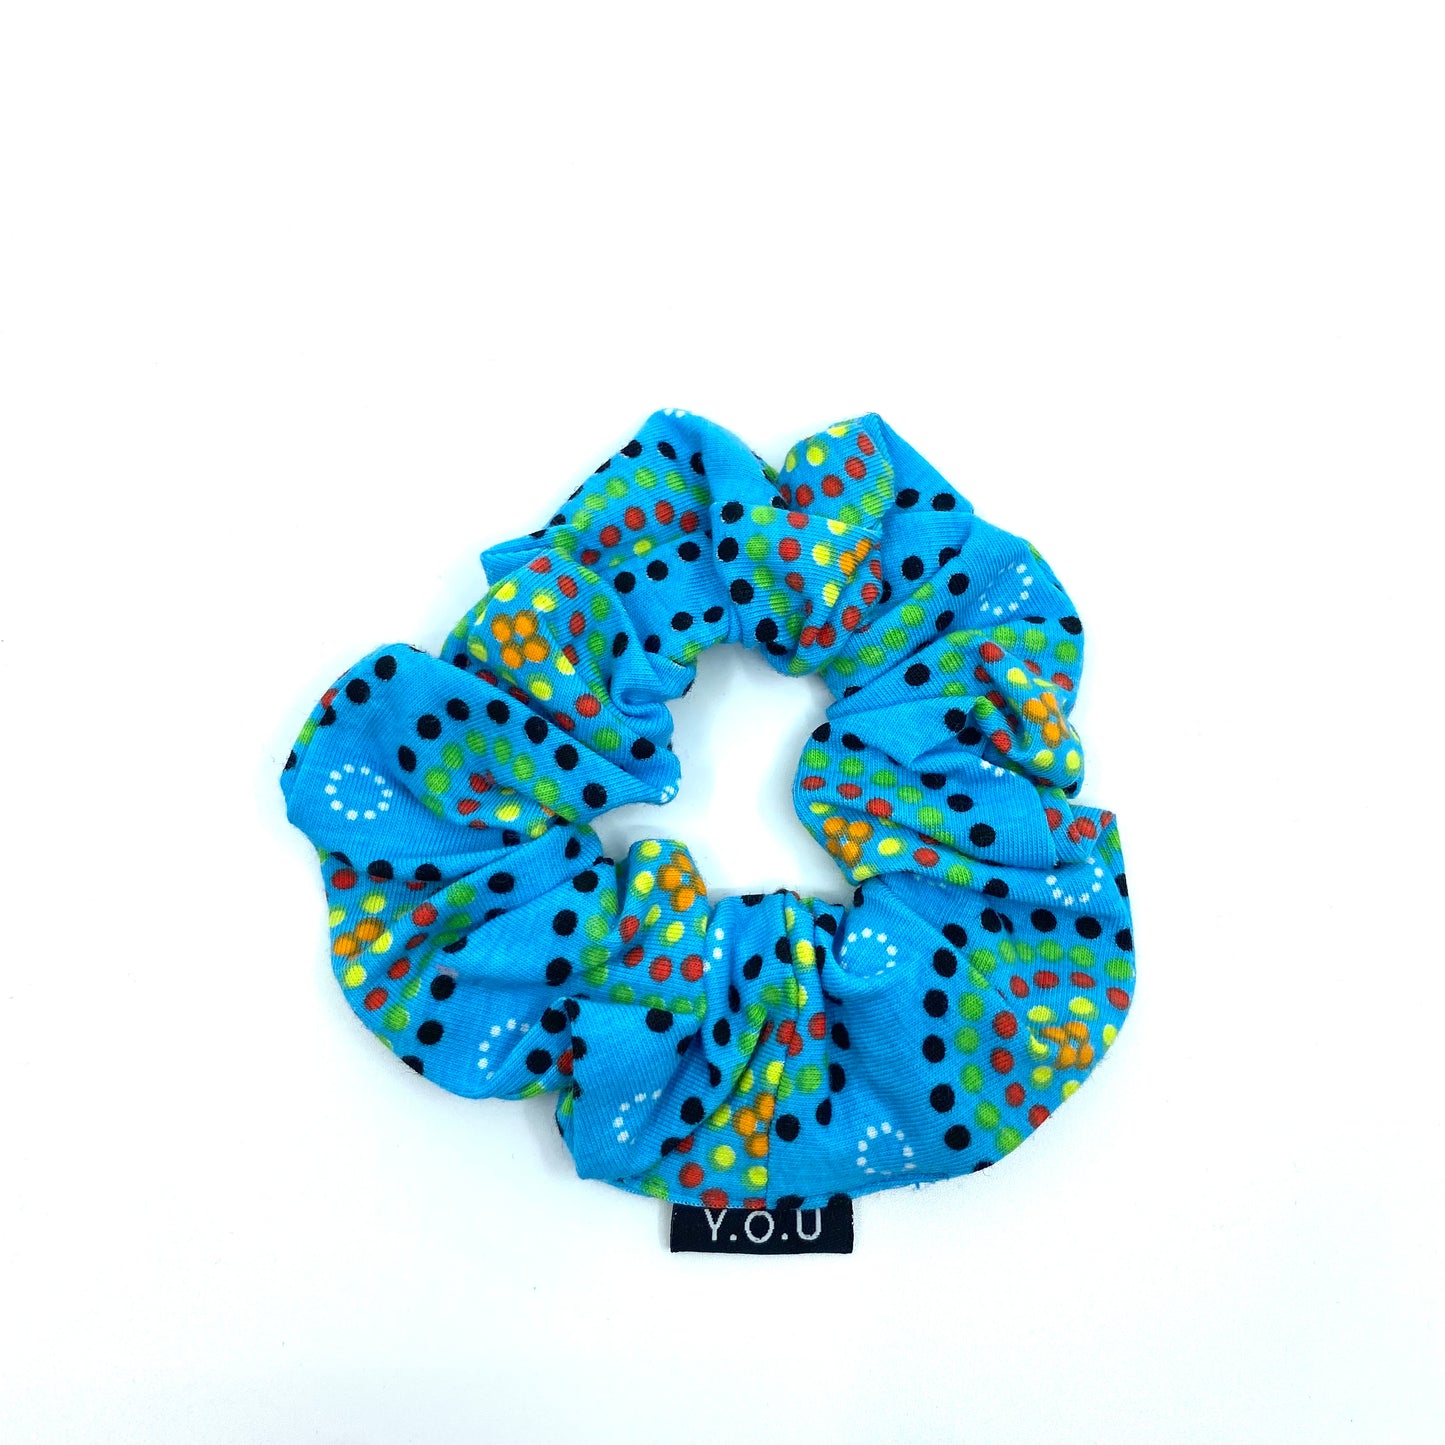 Y.O.U Organic Cotton Scrunchies with Eco Elastic - Mara prints